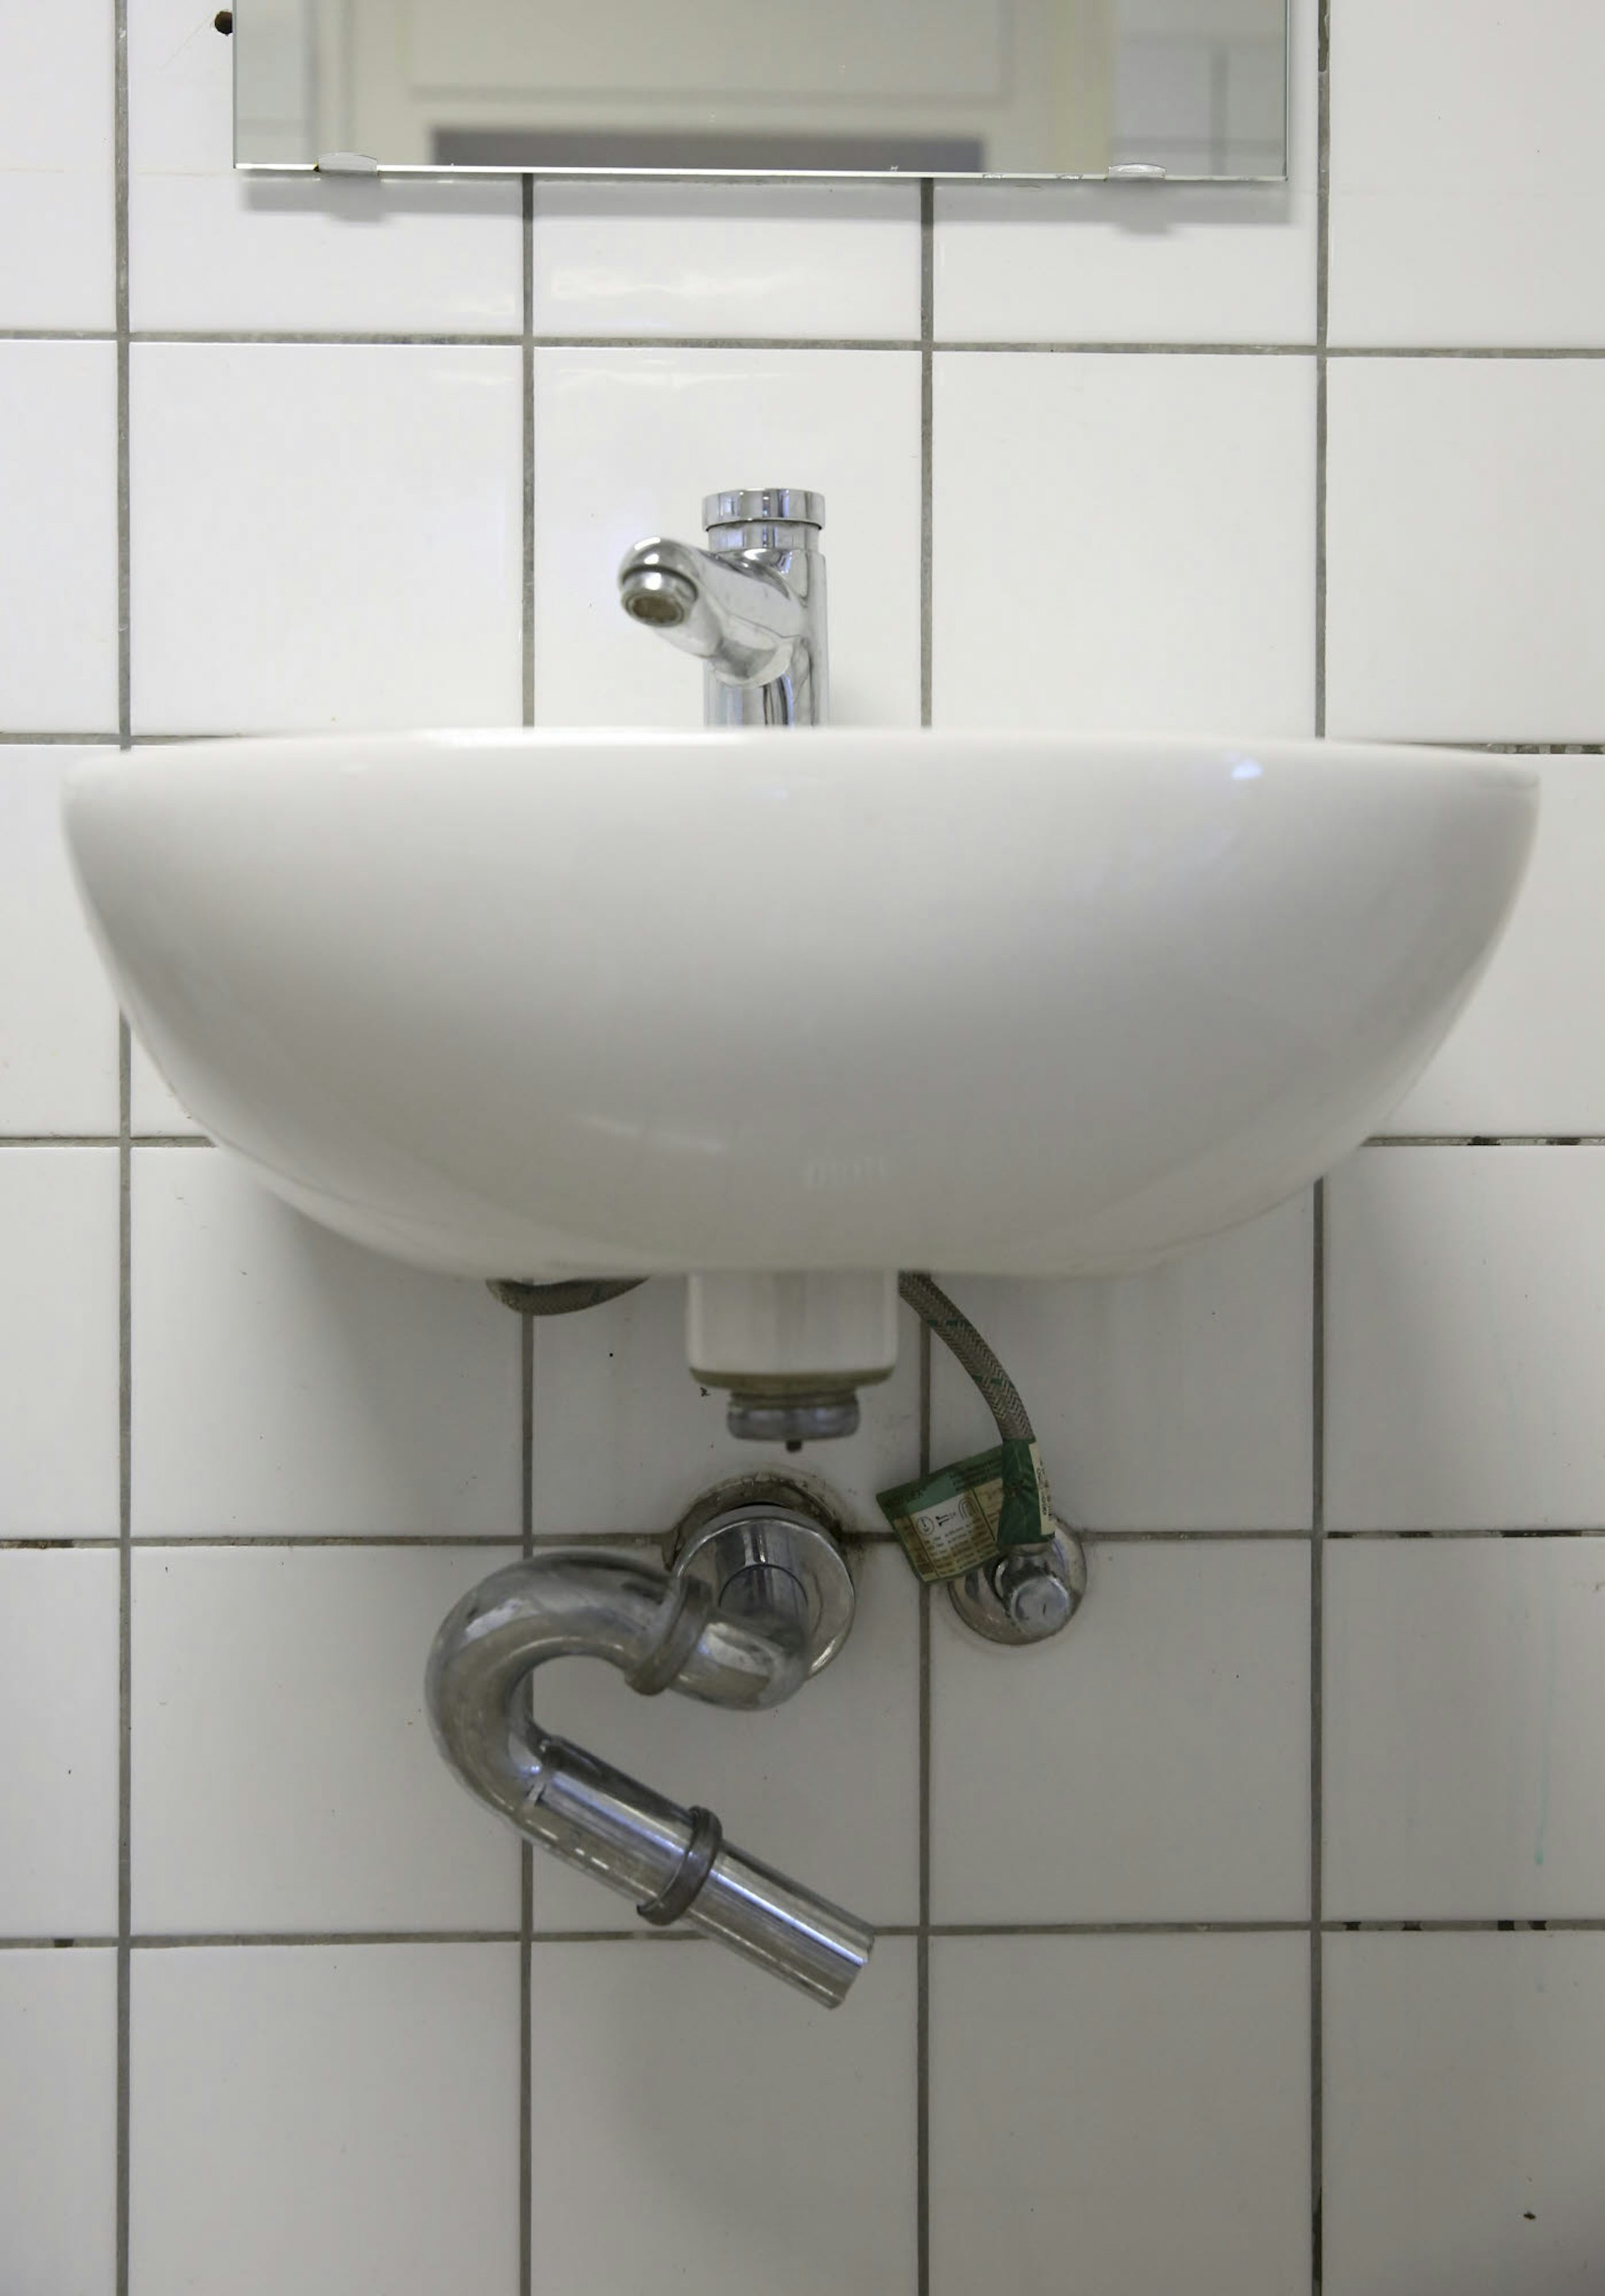 Einige Waschbecken sind reparaturbedürftig, und in den Toilettenkabinen fehlen Klopapier und Abfallbehälter.